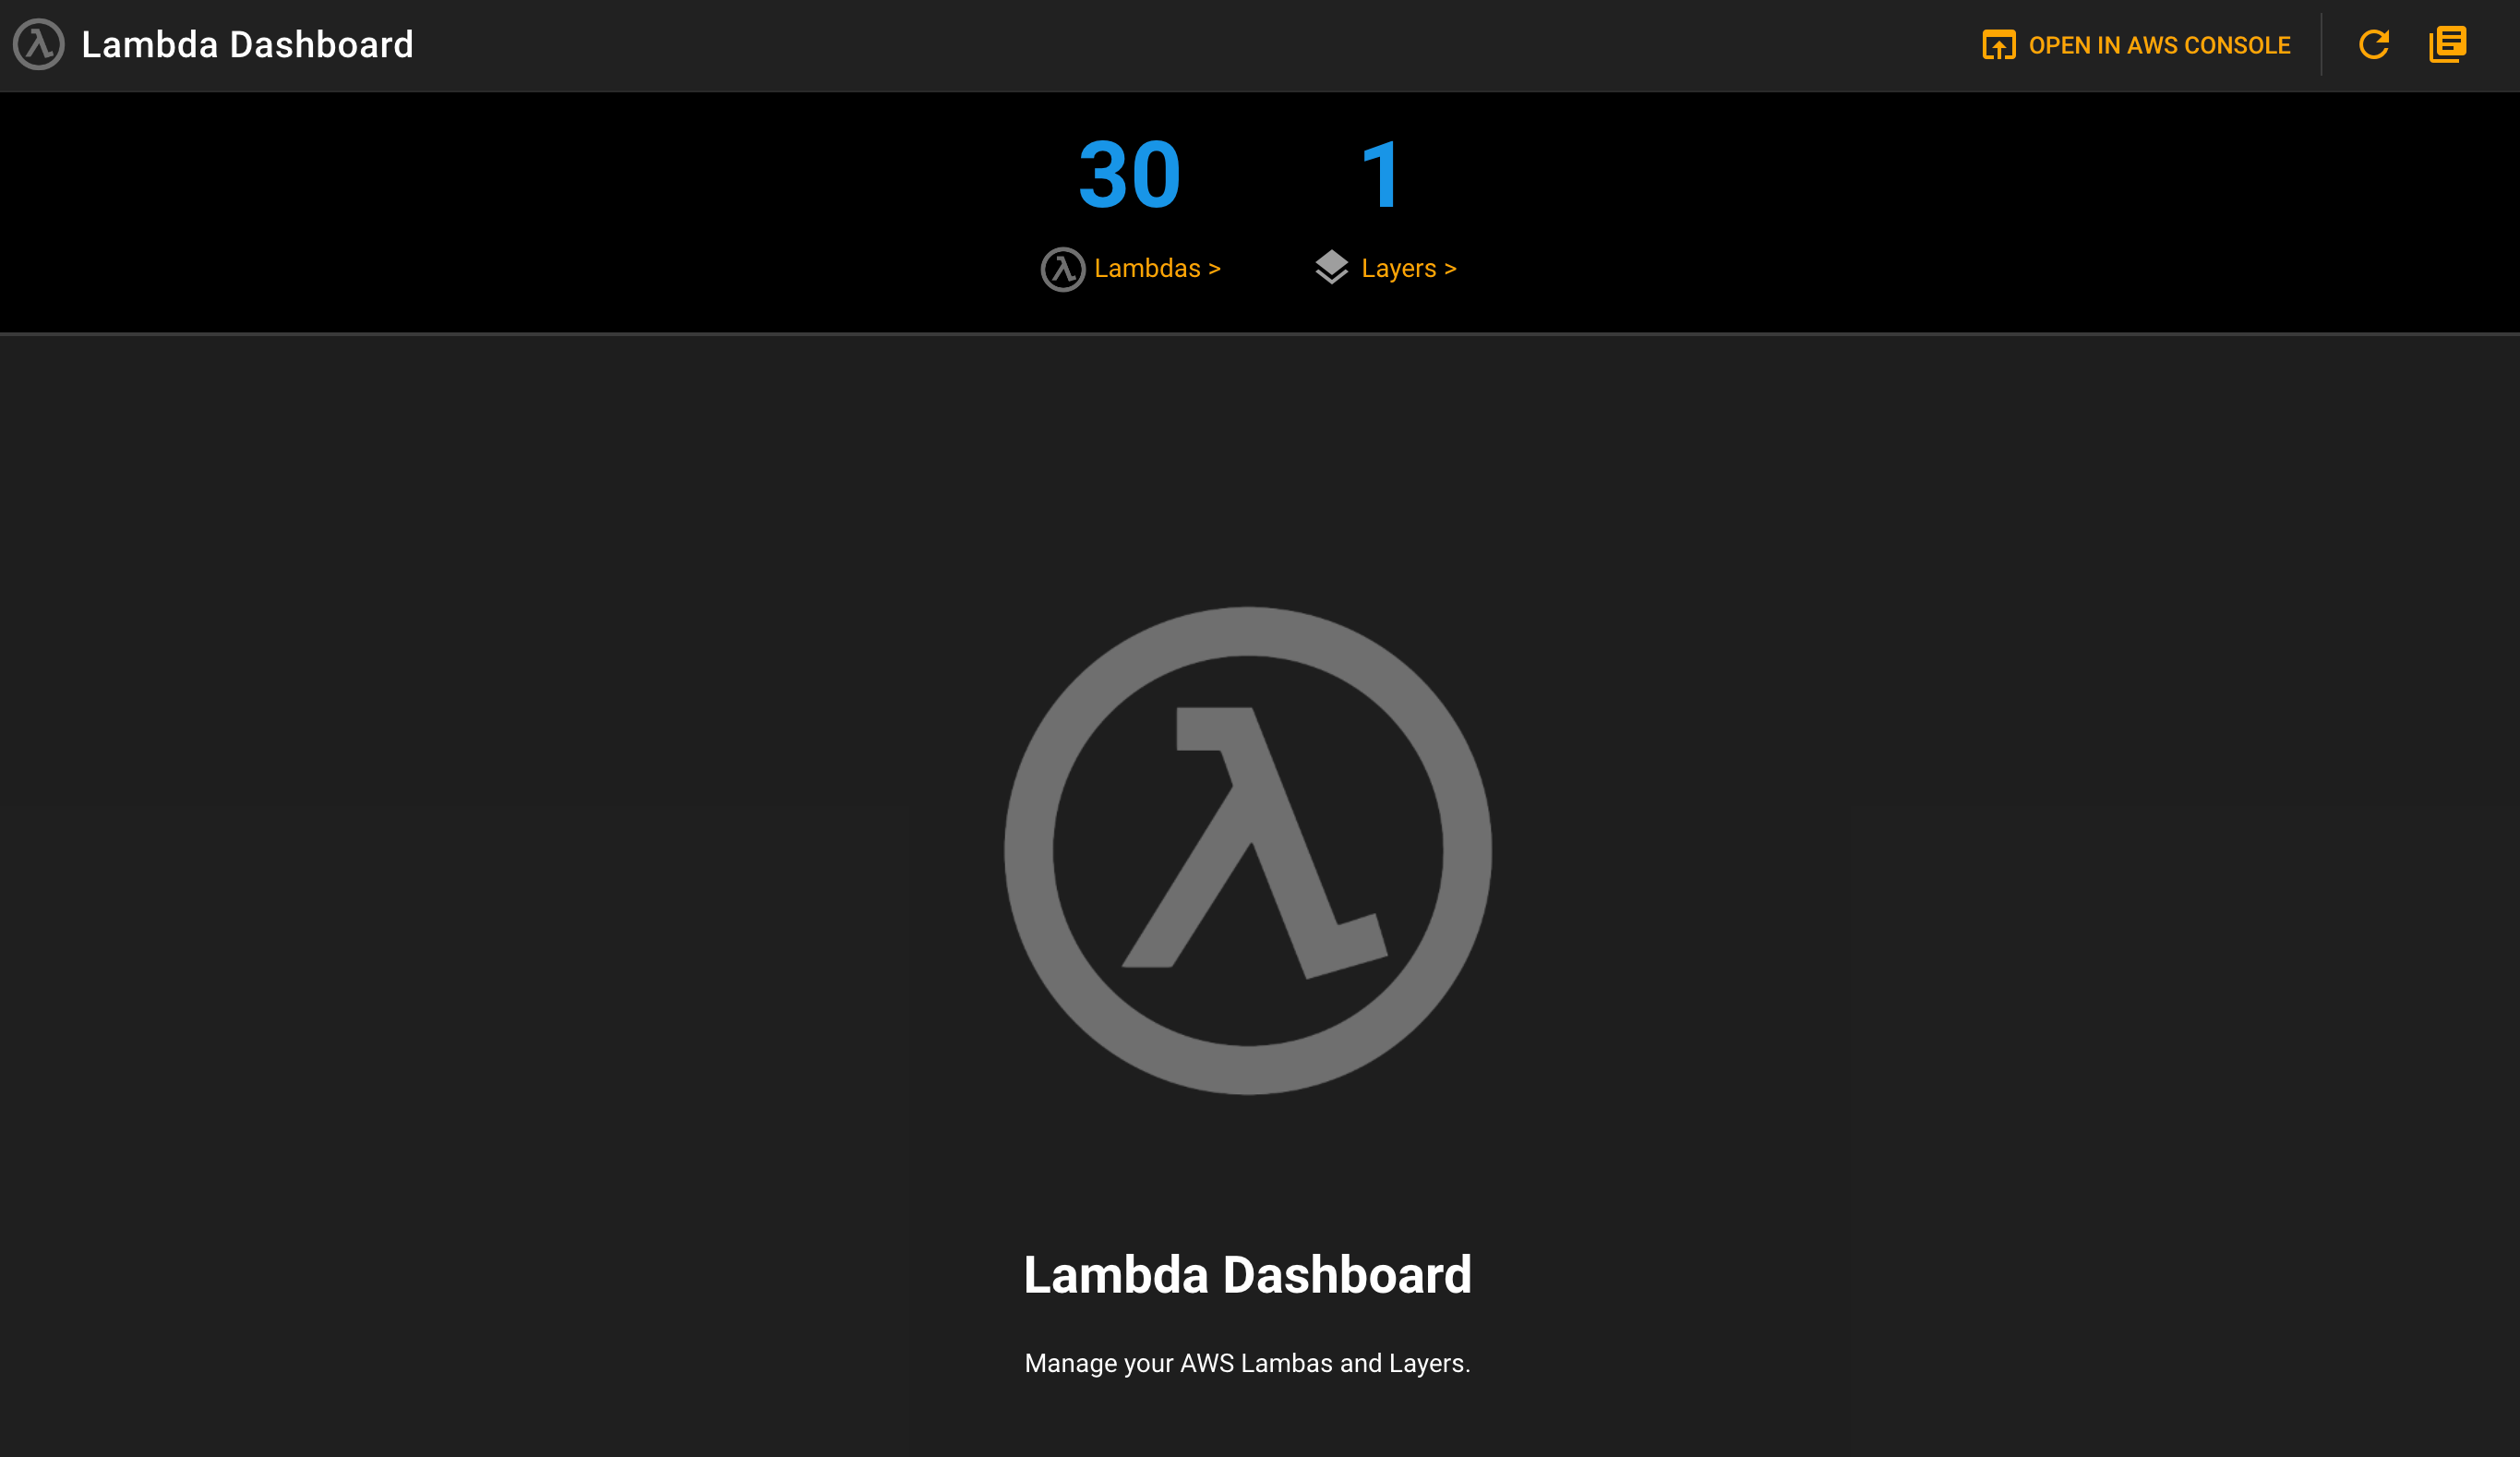 Top level Lambda Dashboard